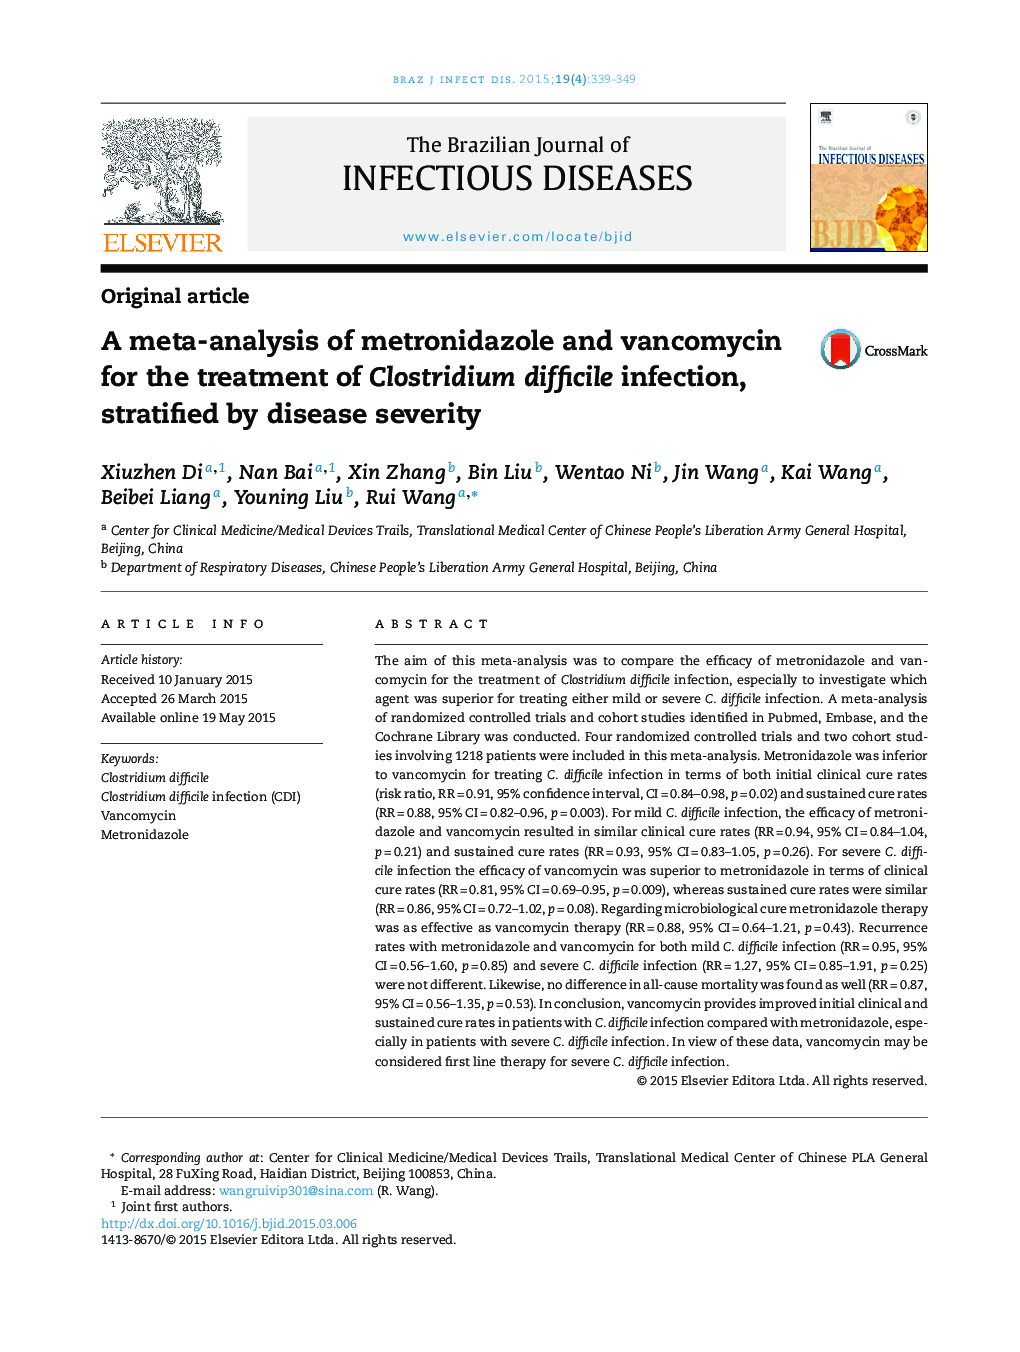 یک متاآنالیز مترونیدازول و وانکومایسین برای درمان عفونت کلستریدیوم دیفیسیل، طبقه بندی شده توسط شدت بیماری 